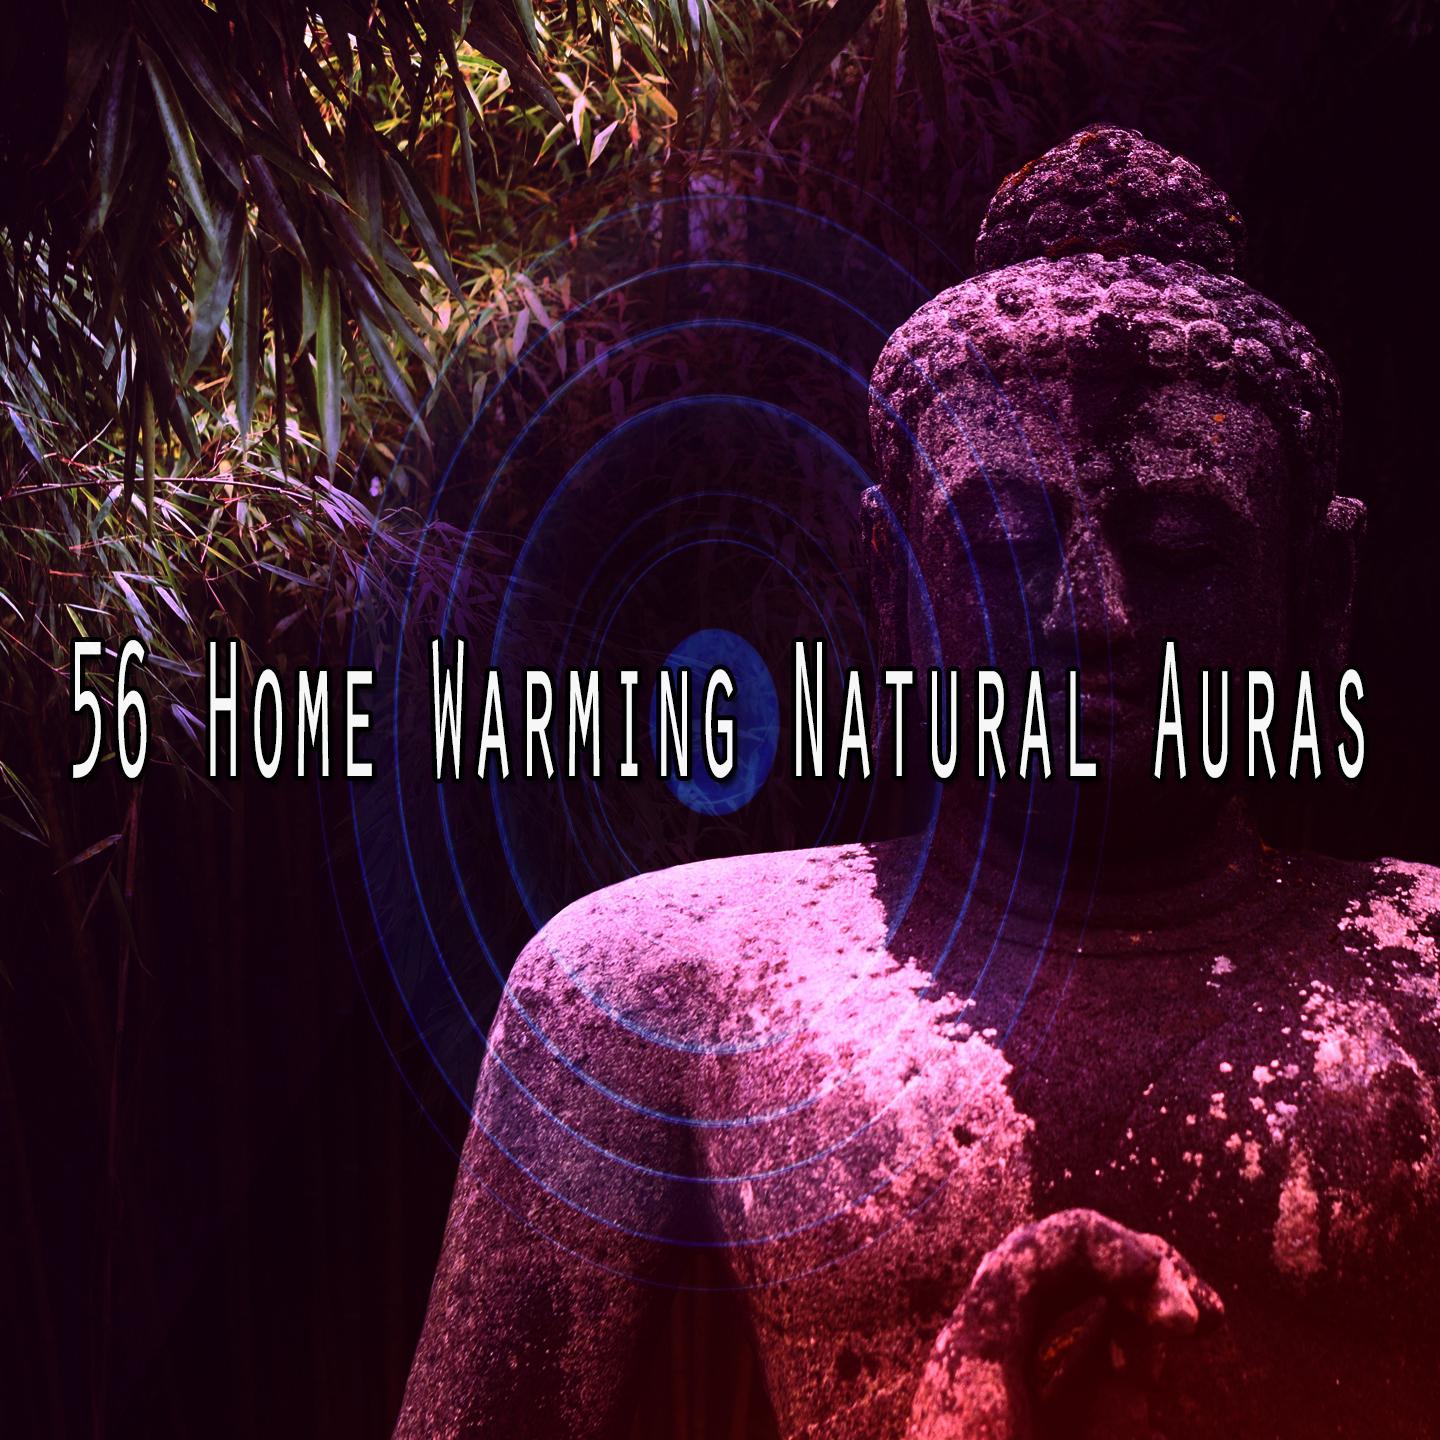 56 Home Warming Natural Auras